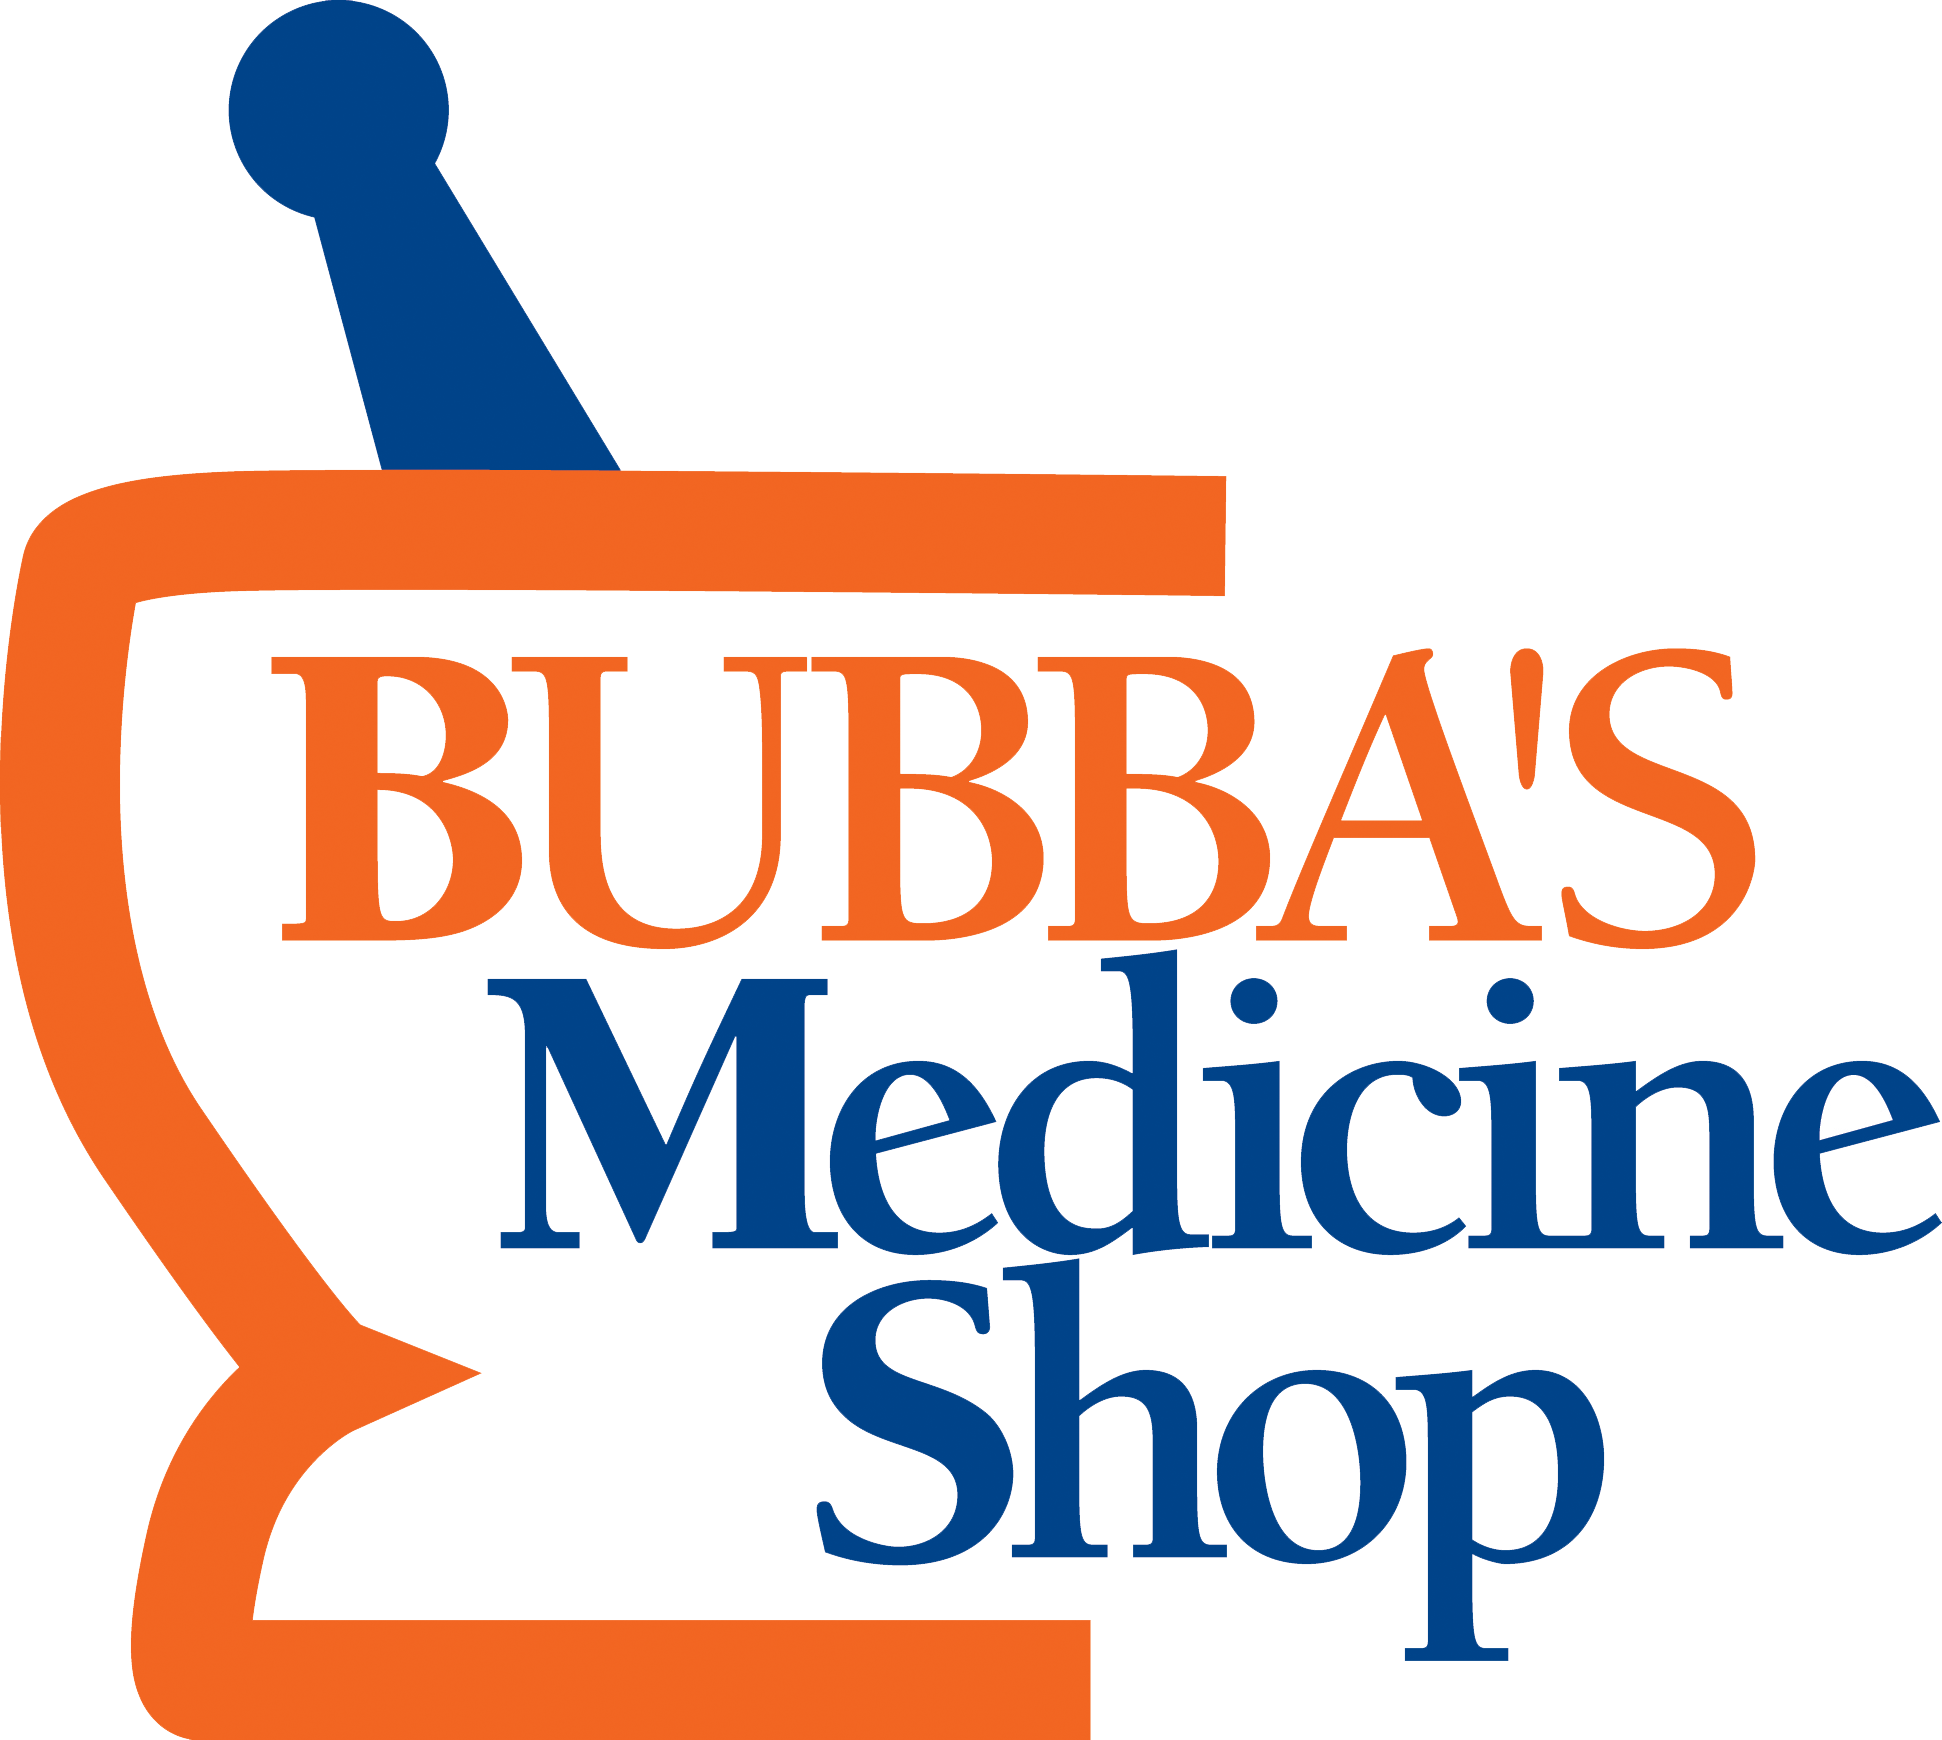 War Eagle Garden Club - Bubba's Medicine Shop (1942x1740)